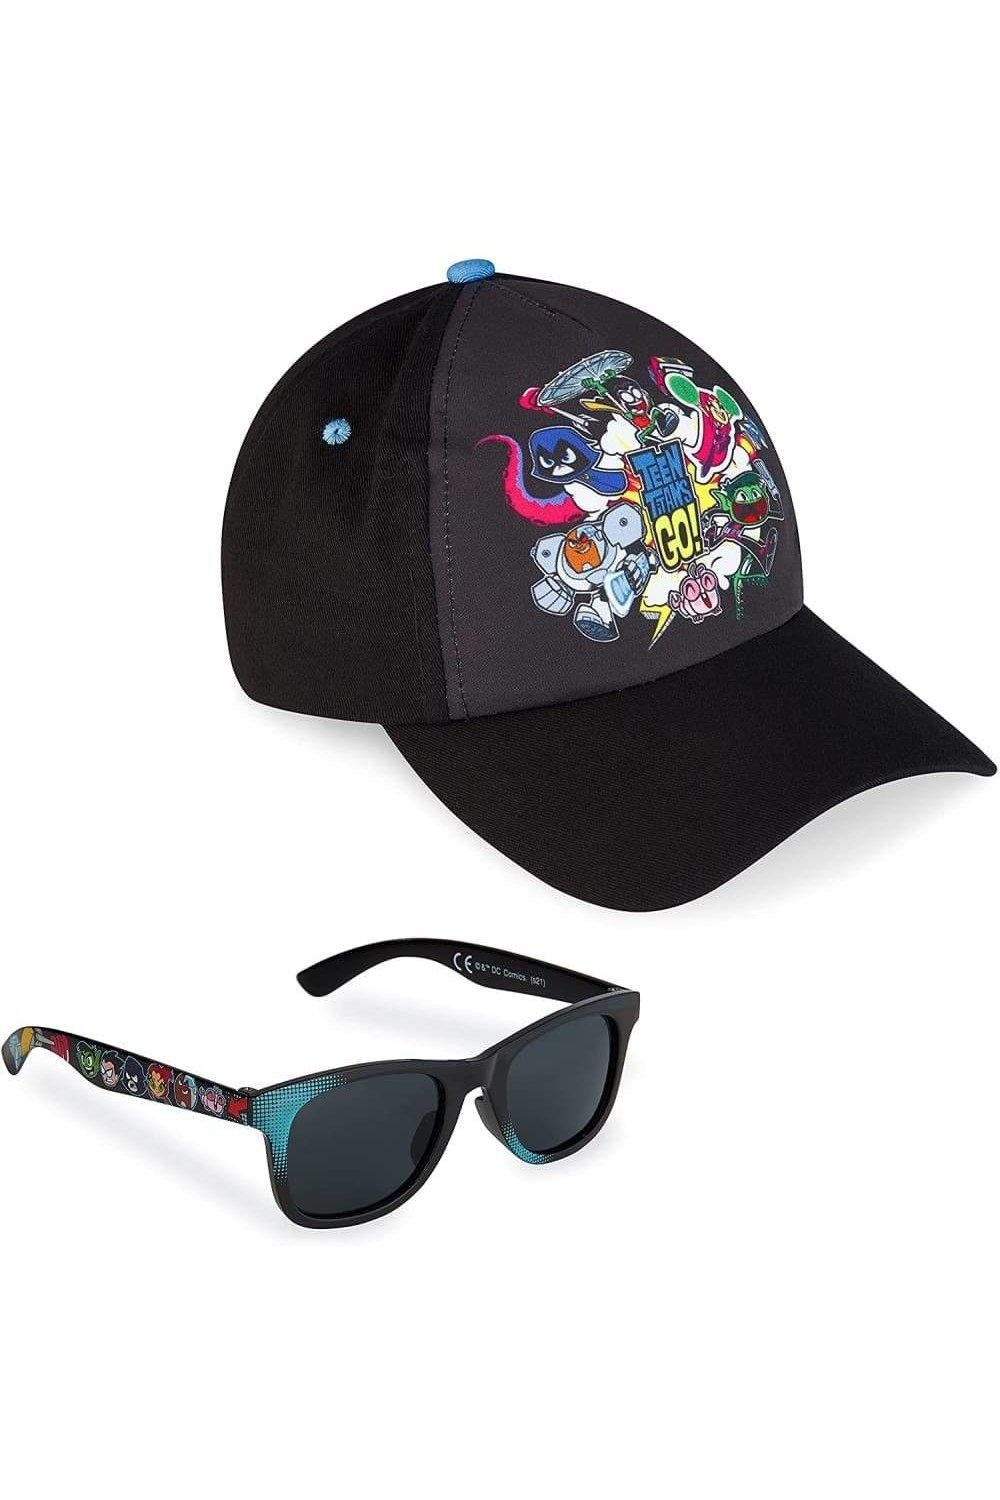 цветная бейсболка для игры мальчика унисекс крутые солнцезащитные кепки летняя уличная солнцезащитная спортивная солнцезащитная шляпа Юные Титаны Кепка и солнцезащитные очки Marvel, мультиколор